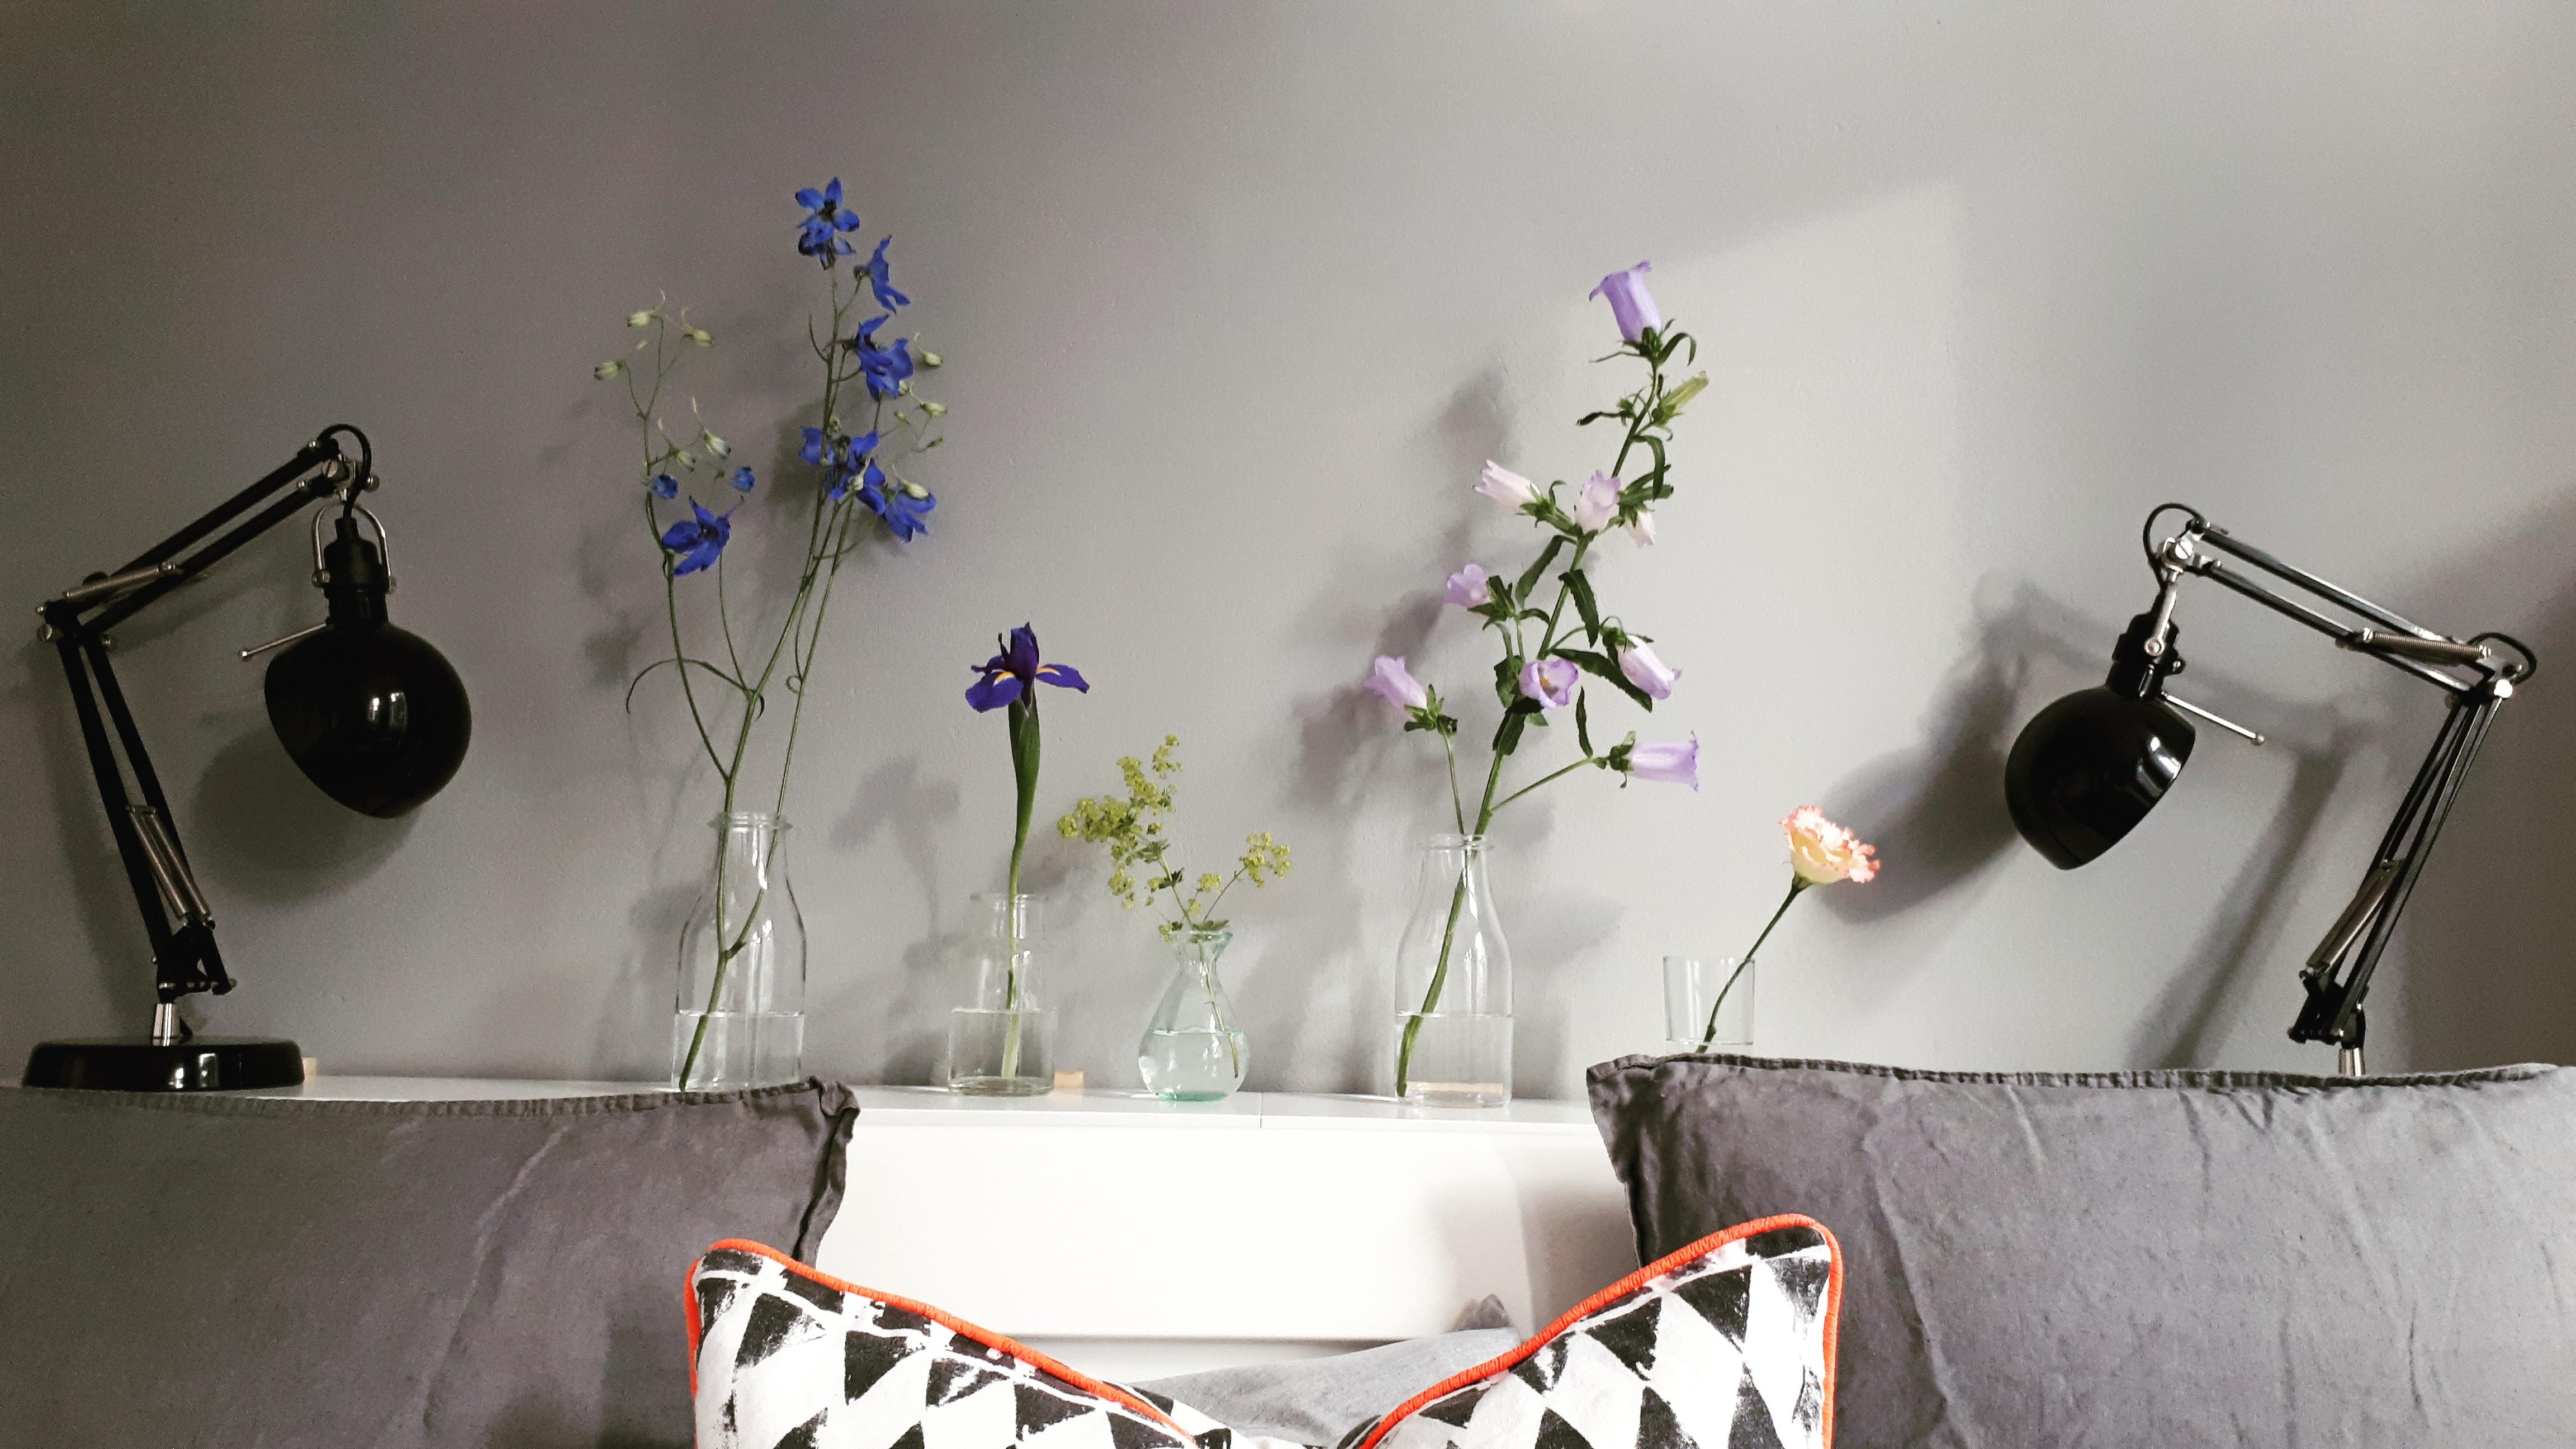 Verliebt in die Blumenvielfalt 💐

#Schlafzimmer #Vielfalt #Blumen #Altbau #Altbauliebe #Scandinavian #Ikea #Vasen